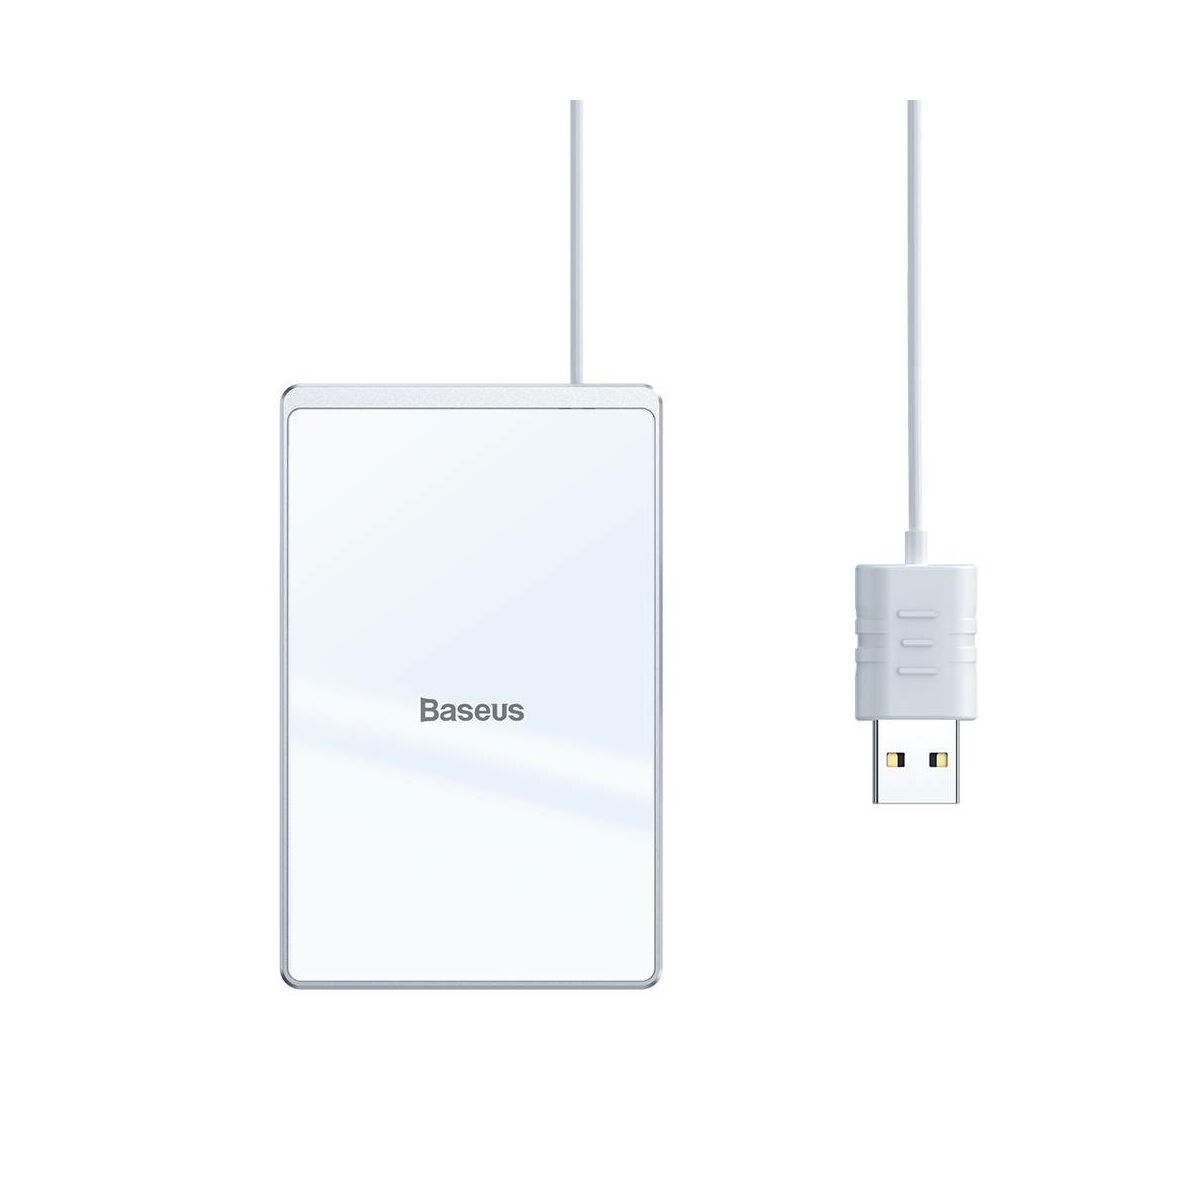 Kép 7/13 - Baseus vezeték nélküli töltő, Ultra-thin Card 15W (beépített 1m USB kábellel), ezüst/fehér (WX01B-S2)